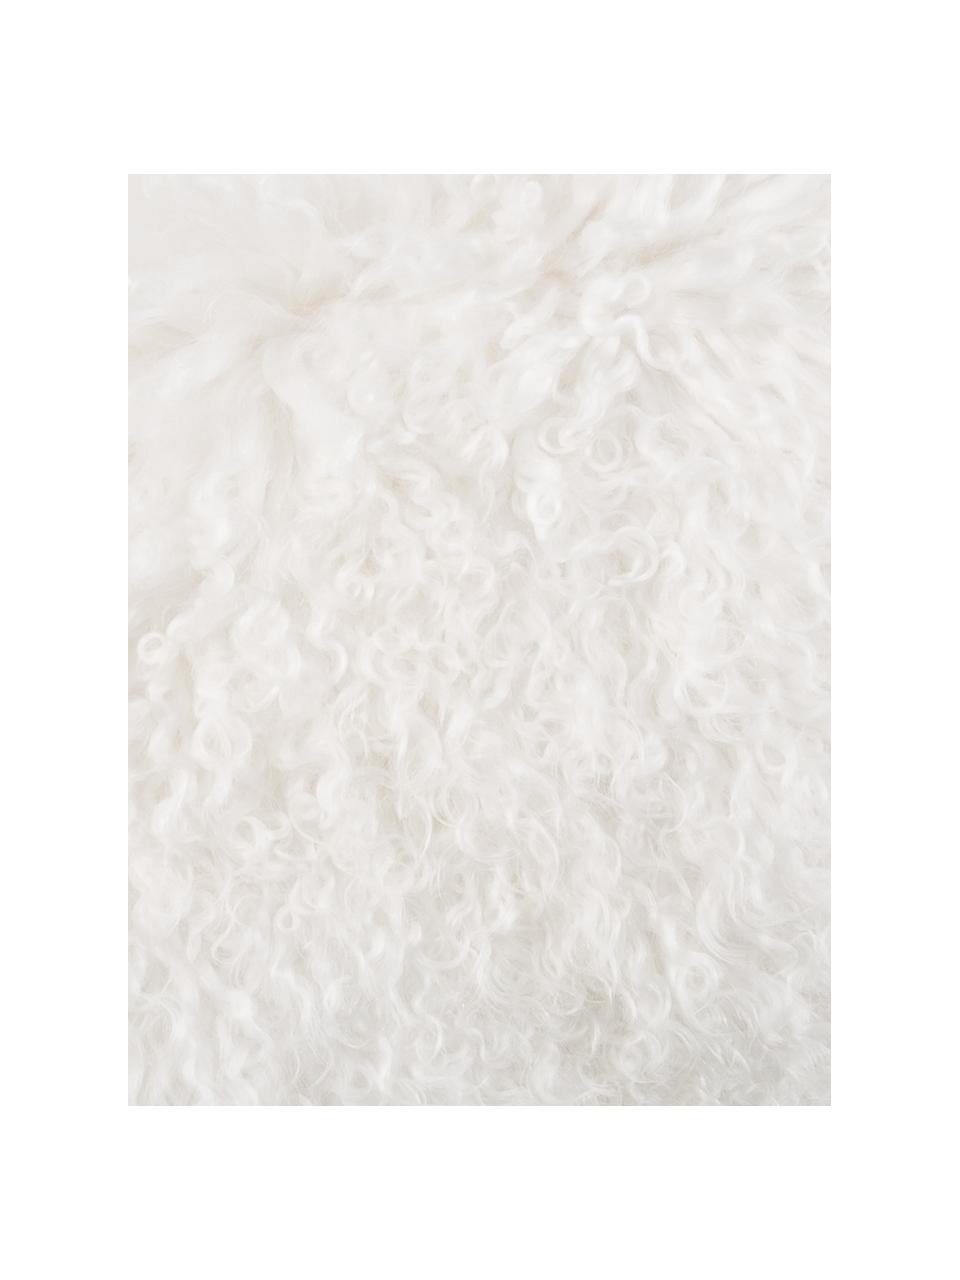 Poszewka na poduszkę ze skóry jagnięcej o długim włosiu Ella, kręcona, Naturalny biały, S 30 x D 50 cm